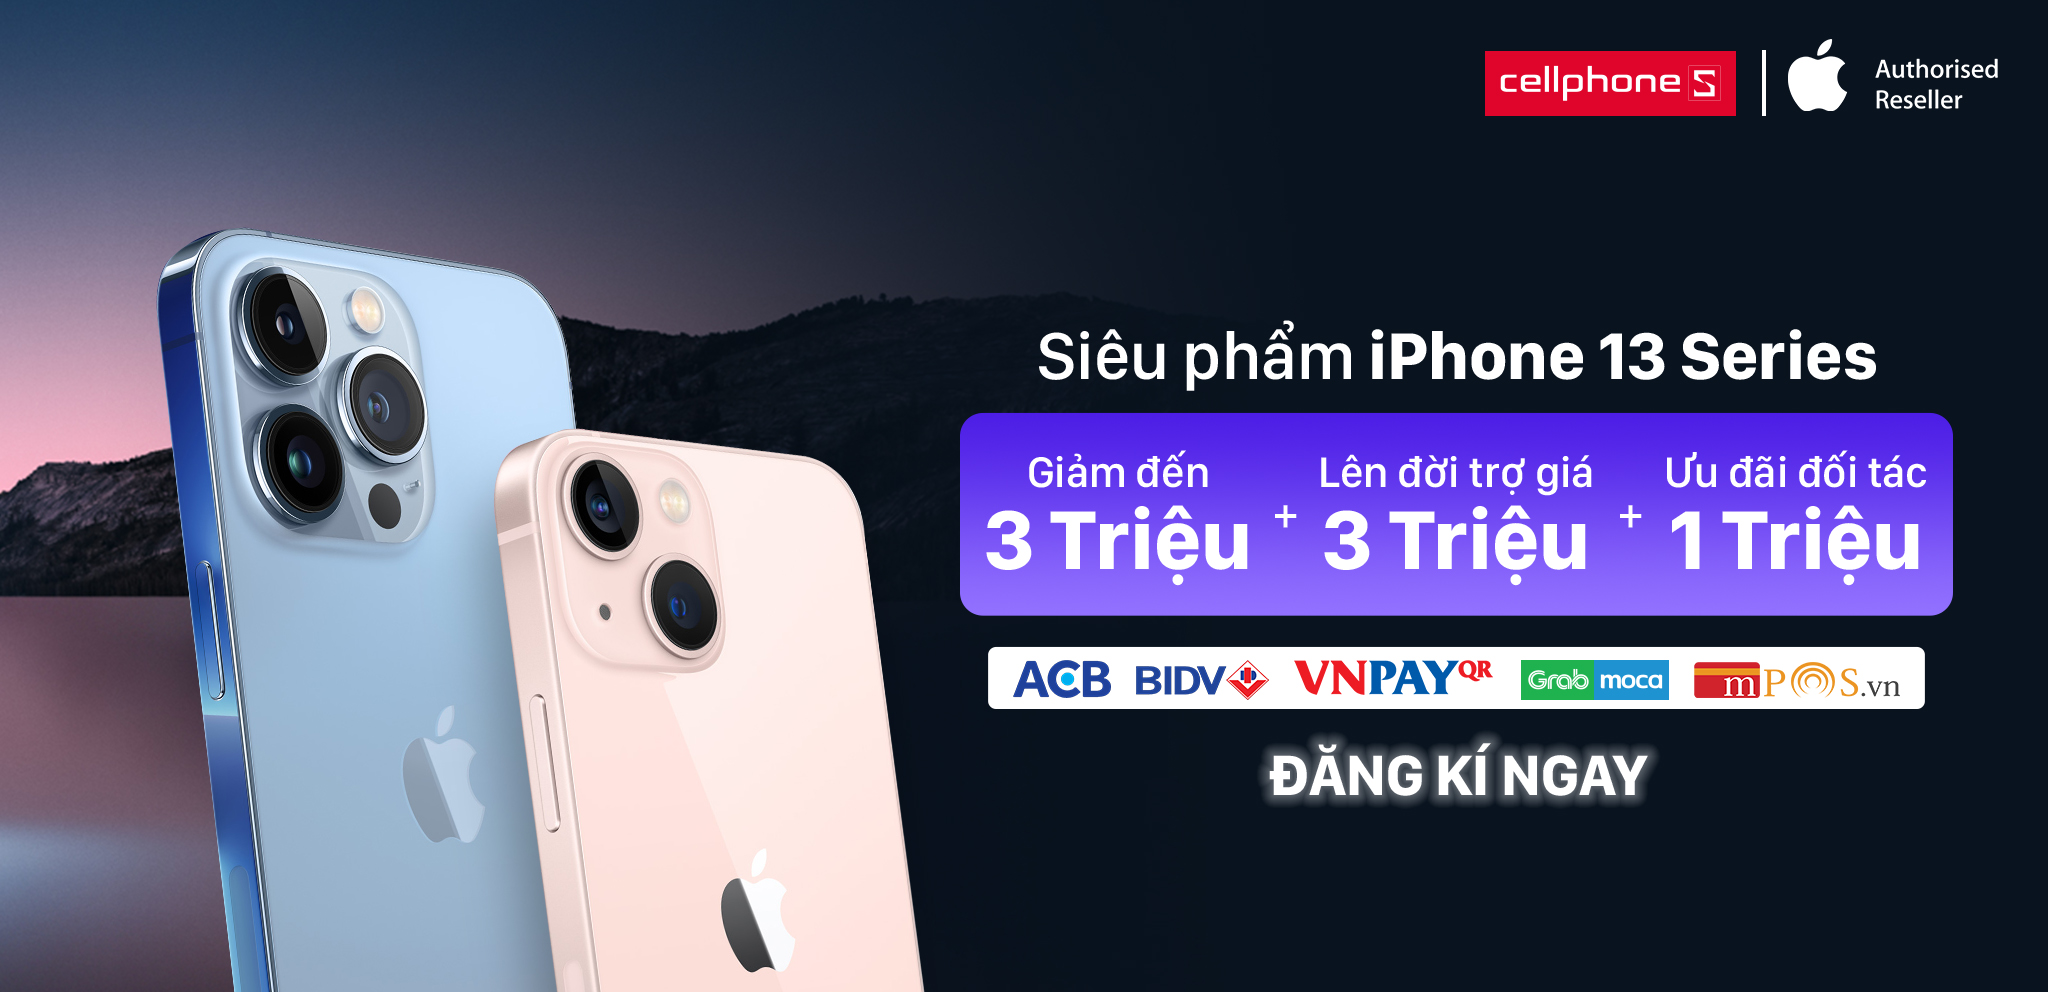 CellphoneS công bố giá bán dự kiến của iPhone 13 tại thị trường Việt Nam